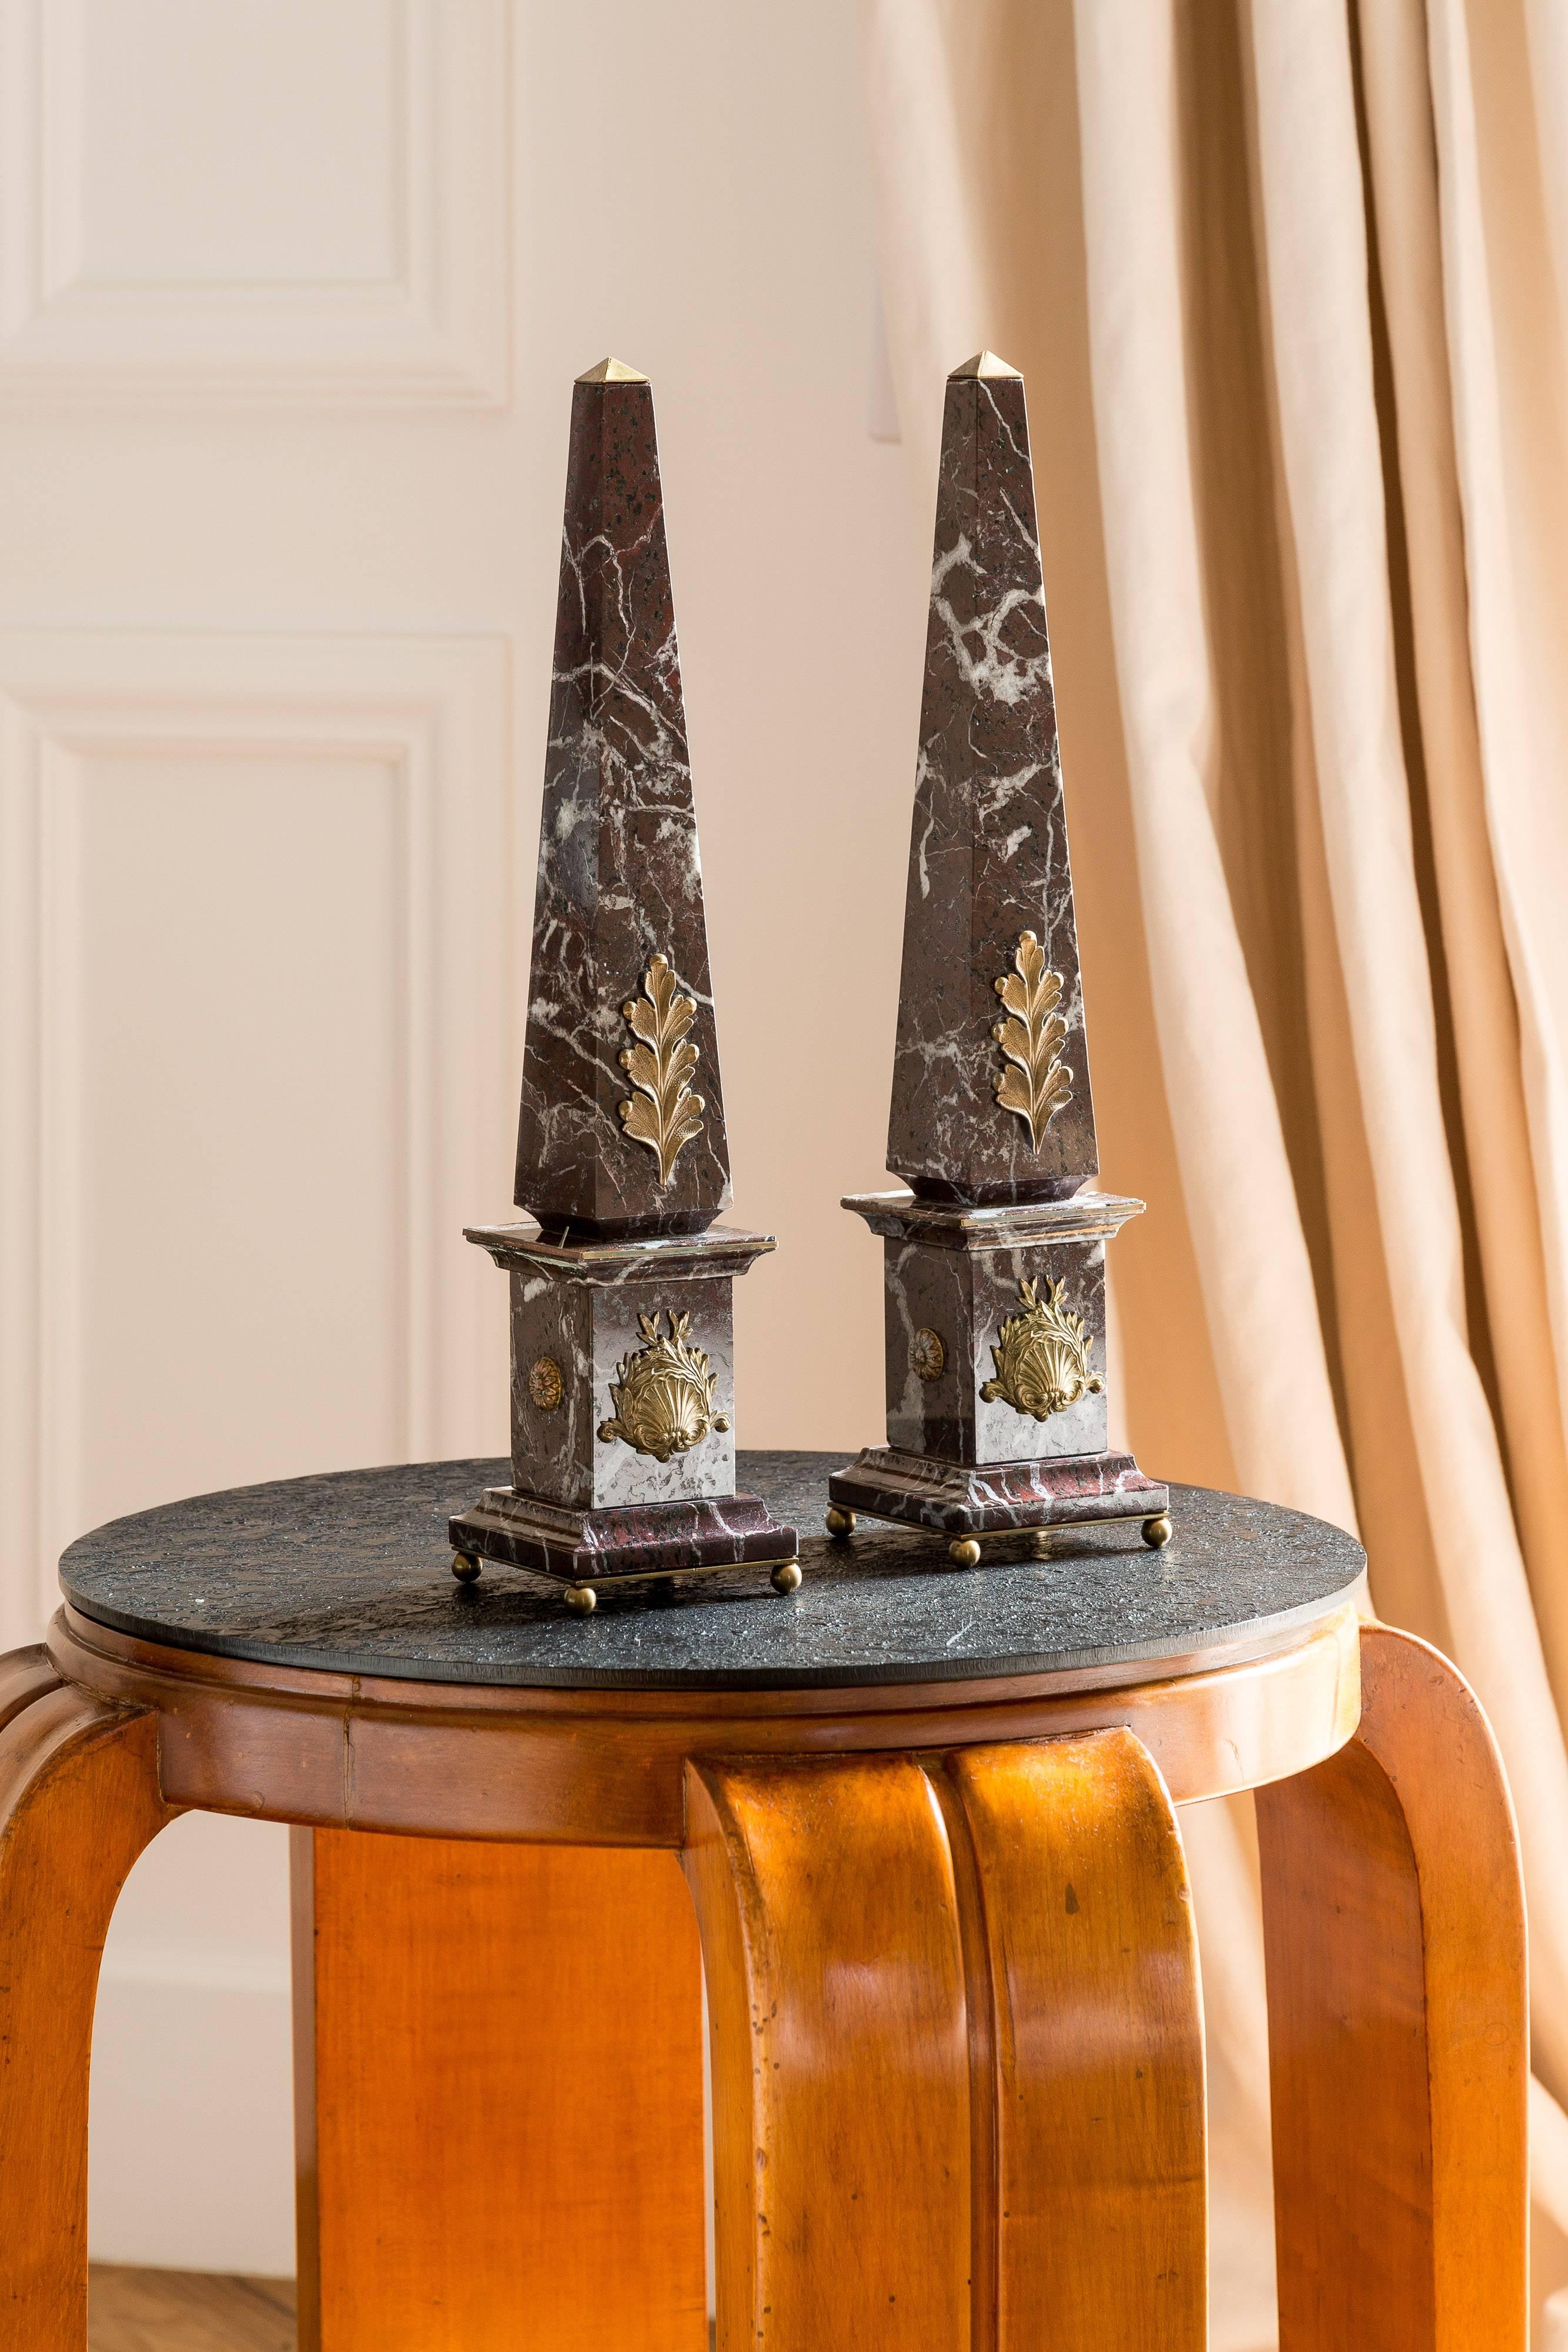 paire d'obélisques italiens en marbre et en bronze, ACANTHUS , - collection Grand Tour - réalisée par Lorenzo Ciompi, 2017 
conçu, produit et exécuté directement en exclusivité pour COMPENDIO GALLERY en édition limitée à 10 exemplaires 
tous les